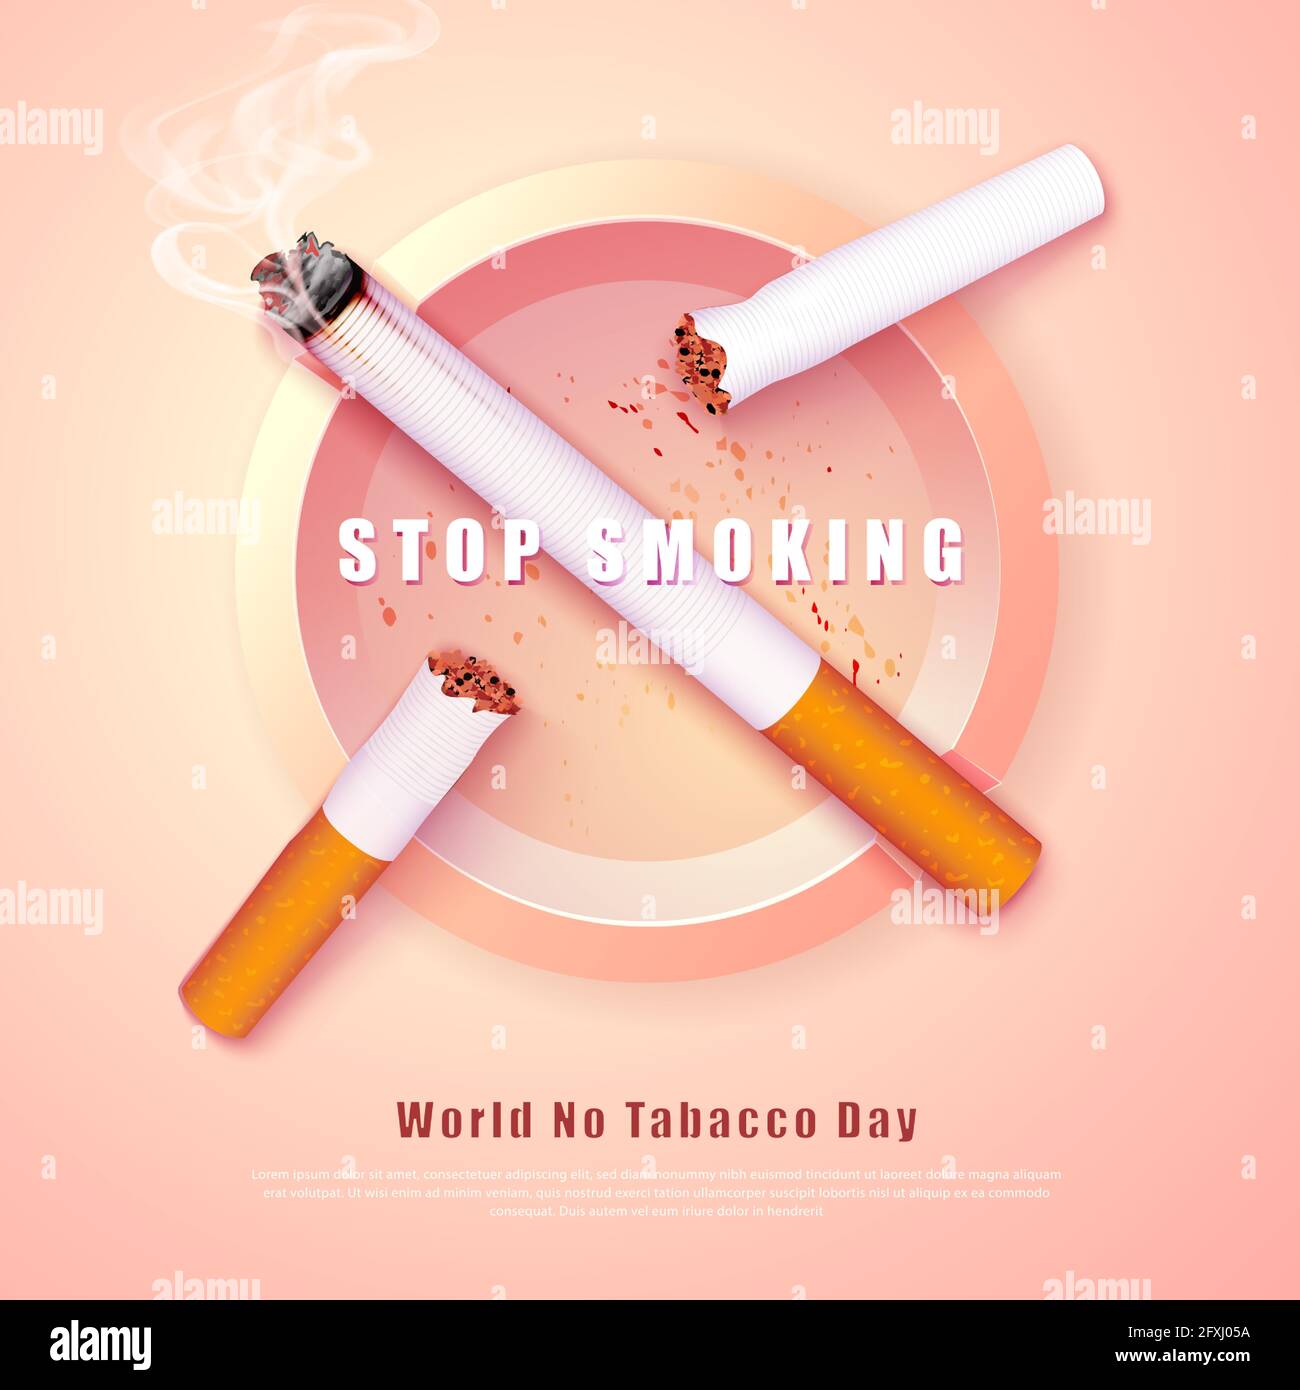 https://c8.alamy.com/compde/2fxj05a/stop-smoking-kampagne-illustration-keine-zigarette-fur-gesundheit-gebrochene-zigaretten-und-aschenbecher-2fxj05a.jpg